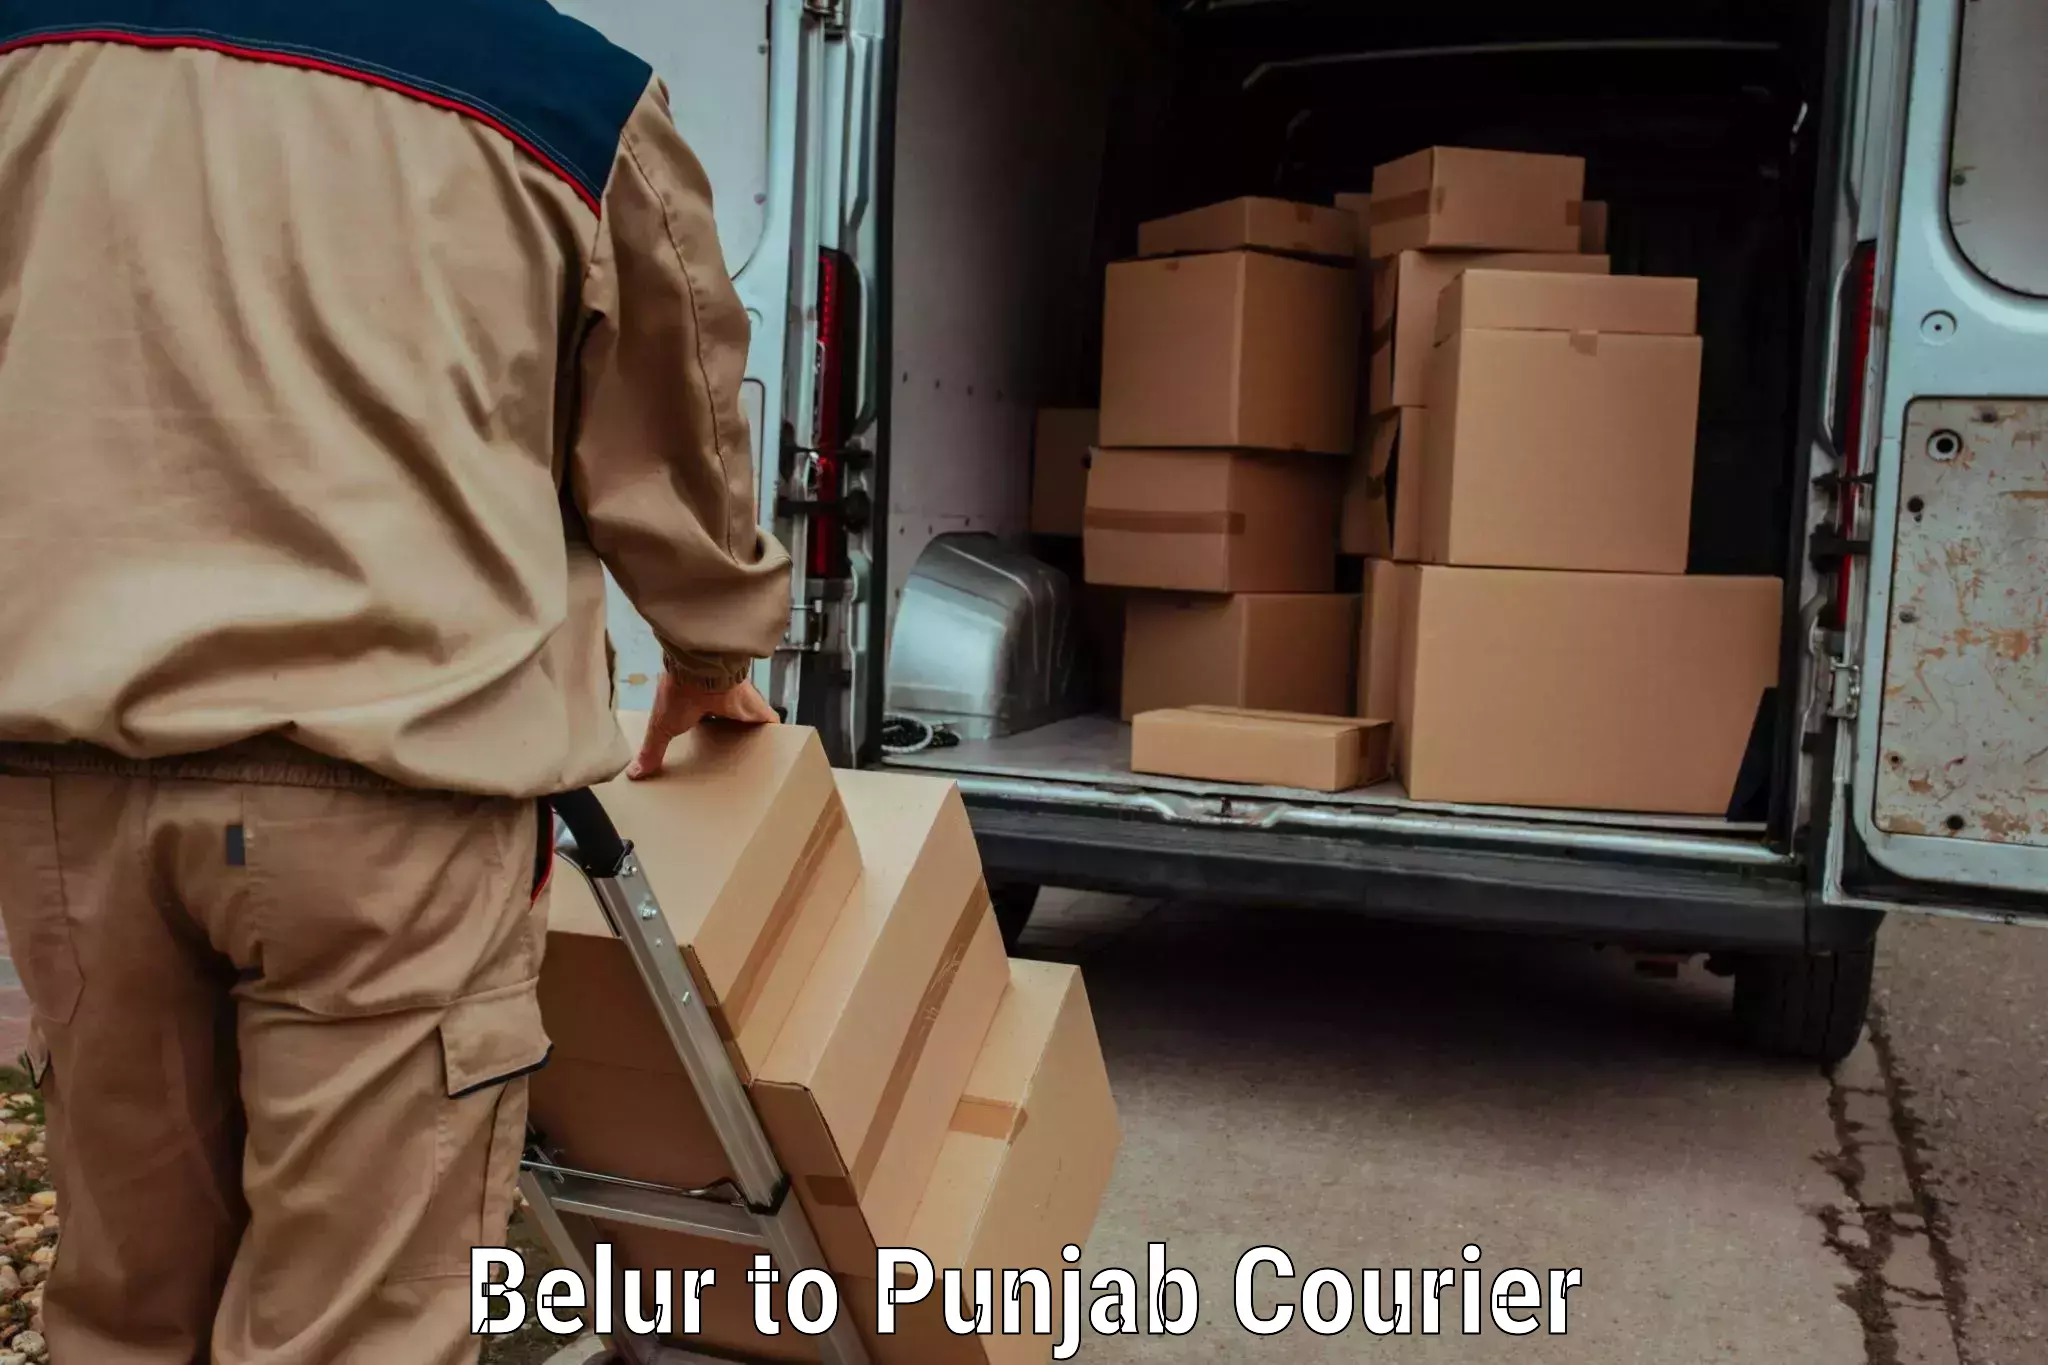 Luggage transport schedule Belur to Punjab